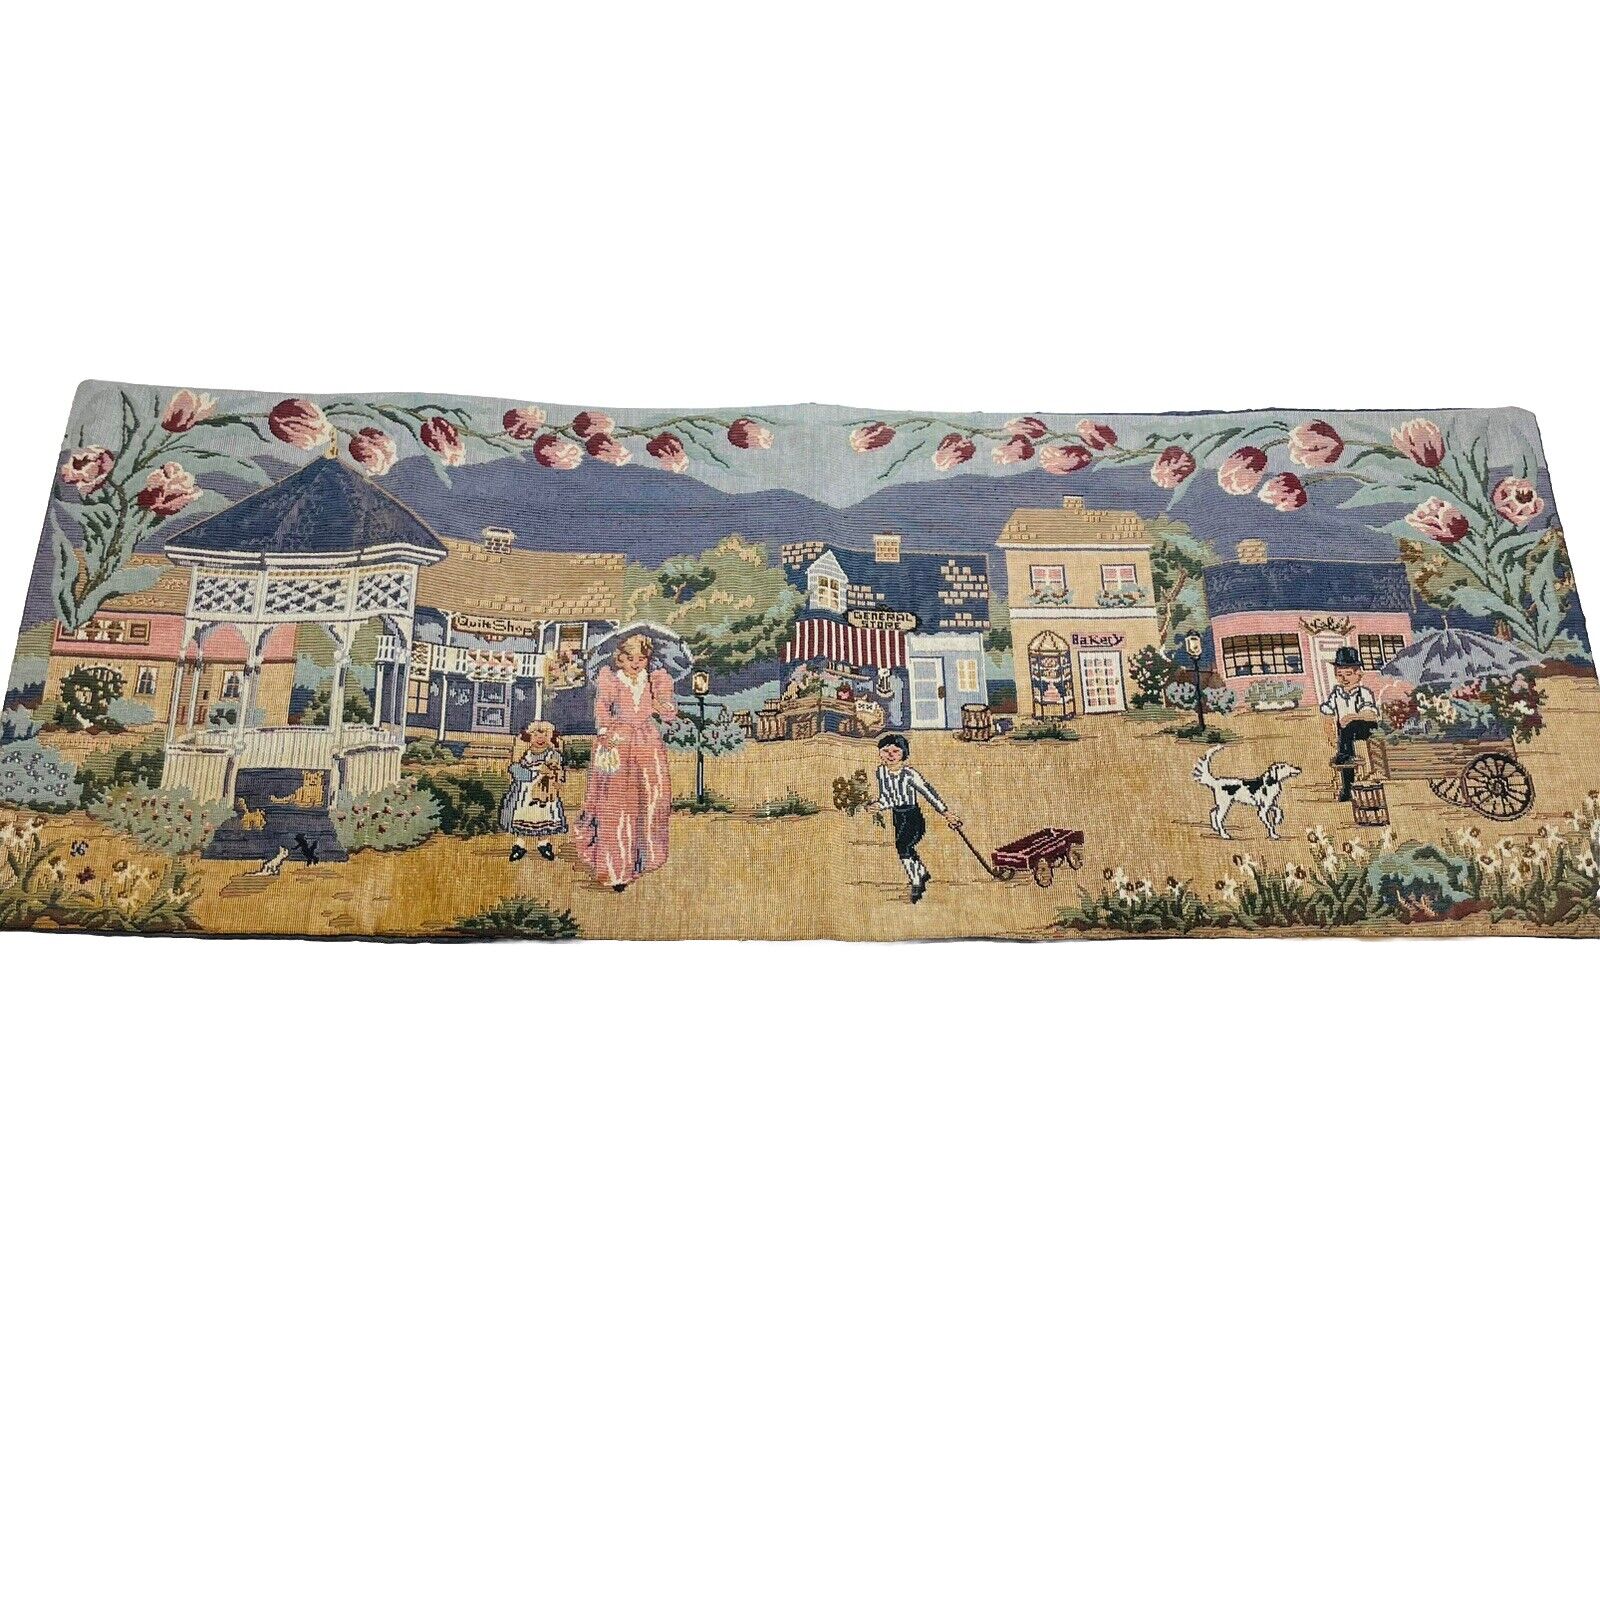 Vintage Victorian Village Dresser Scarf Table Runner Tapestry Children Town